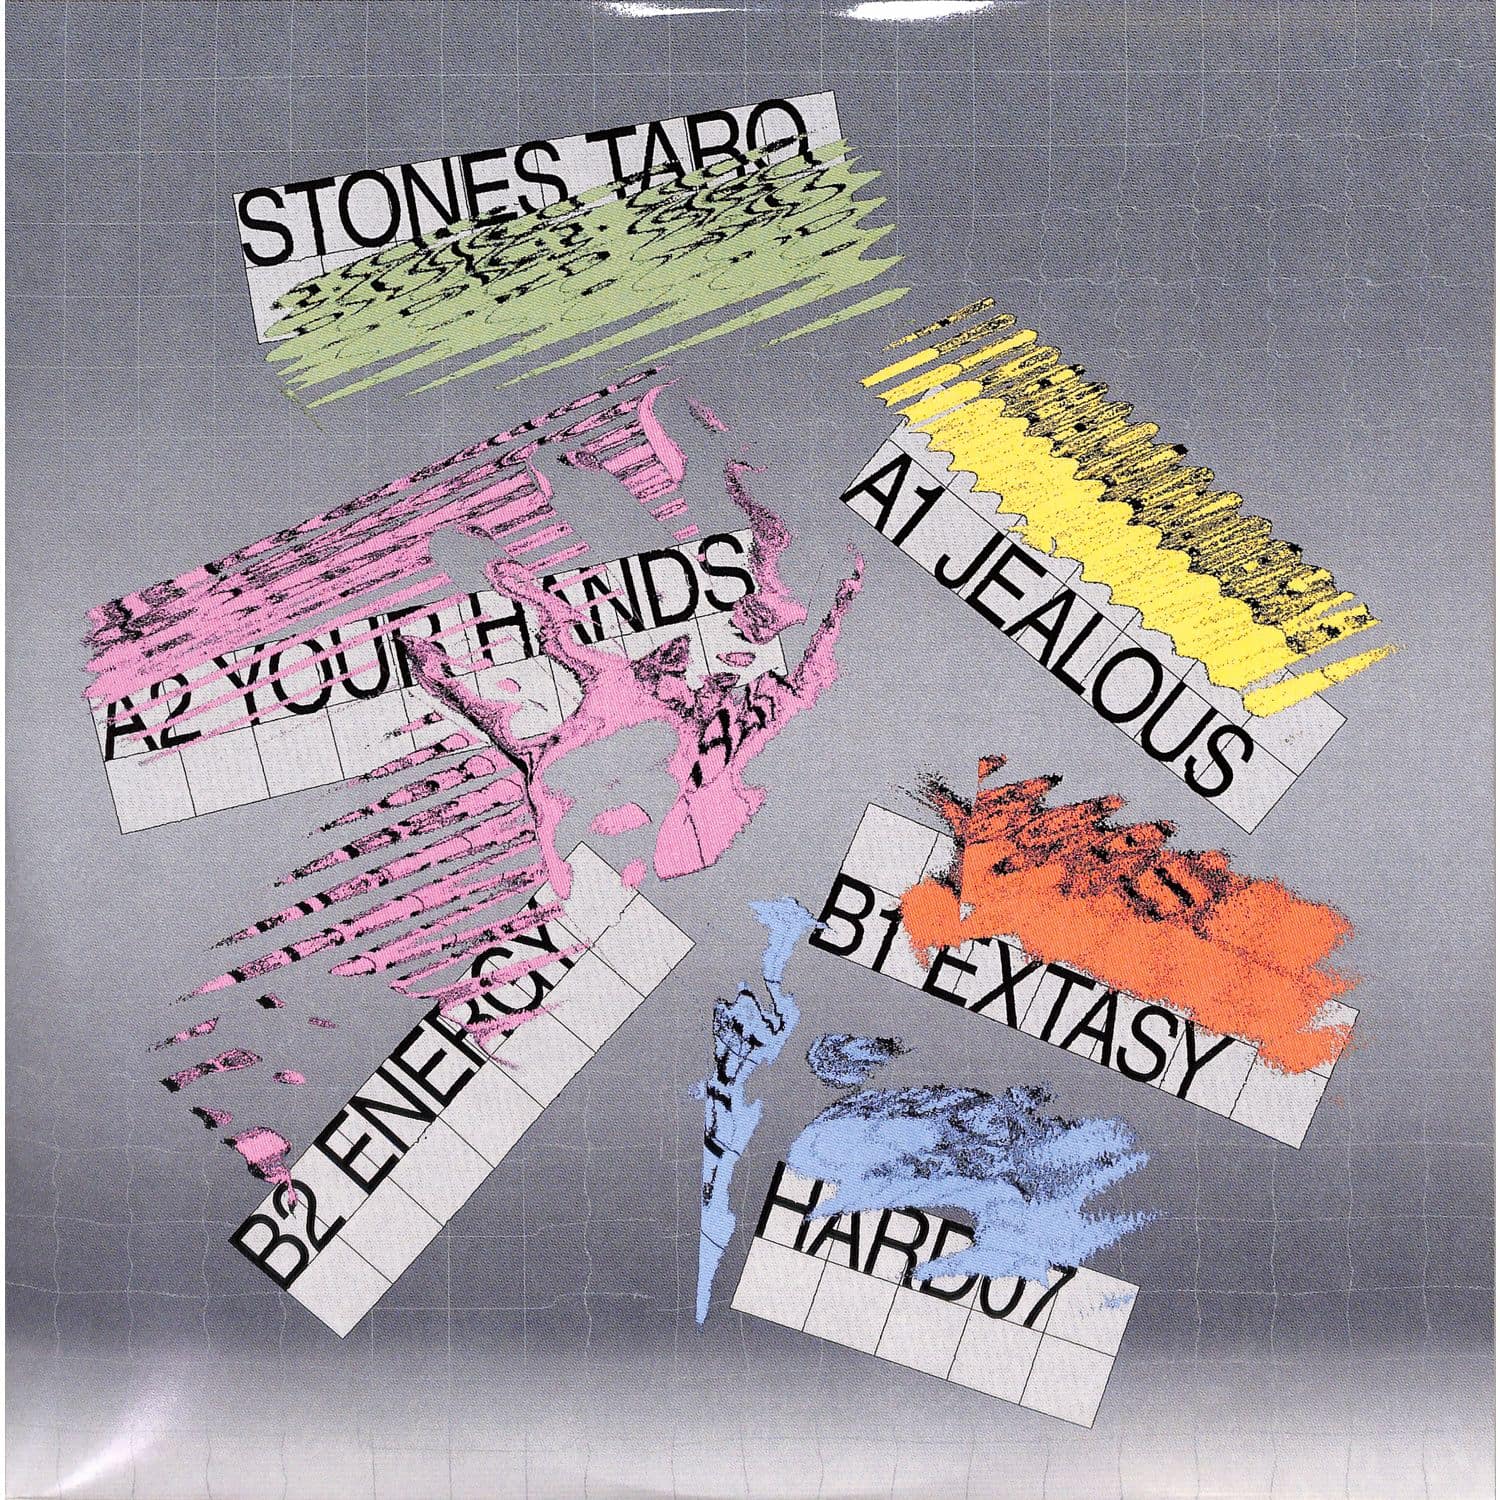 Stones Taro - HARD07